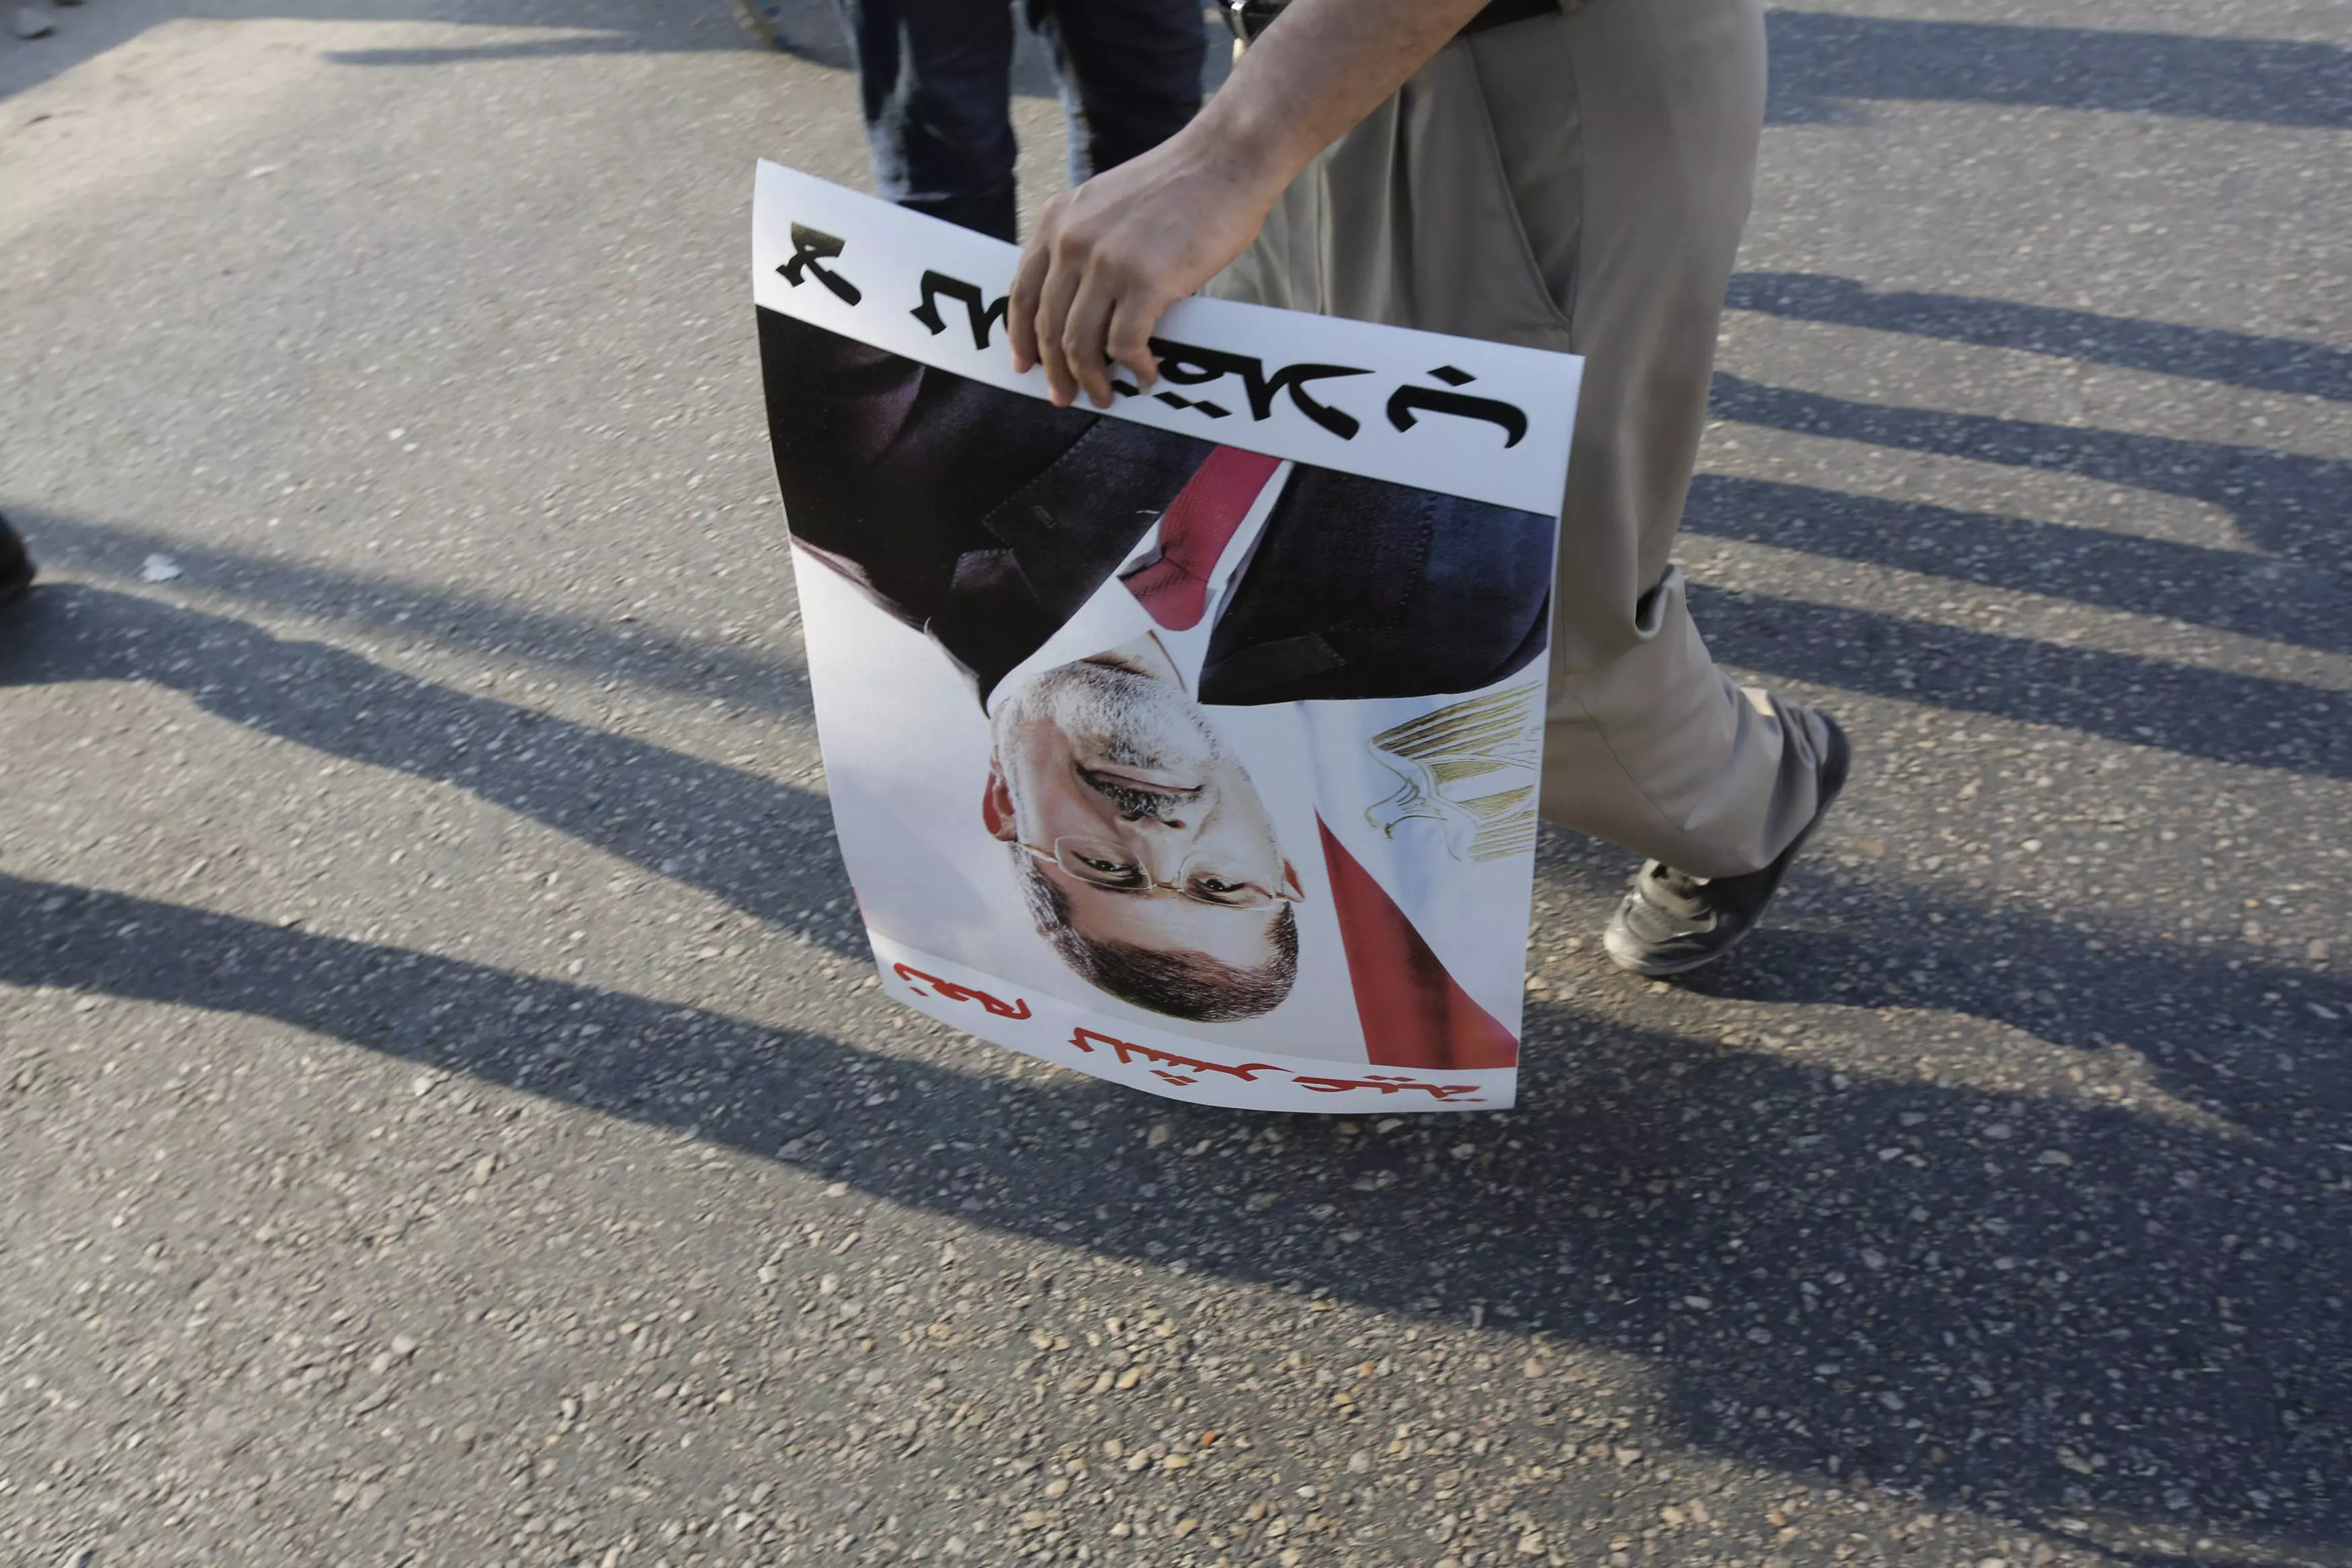 מפגין נושא שלט לתמיכה במורסי בקהיר